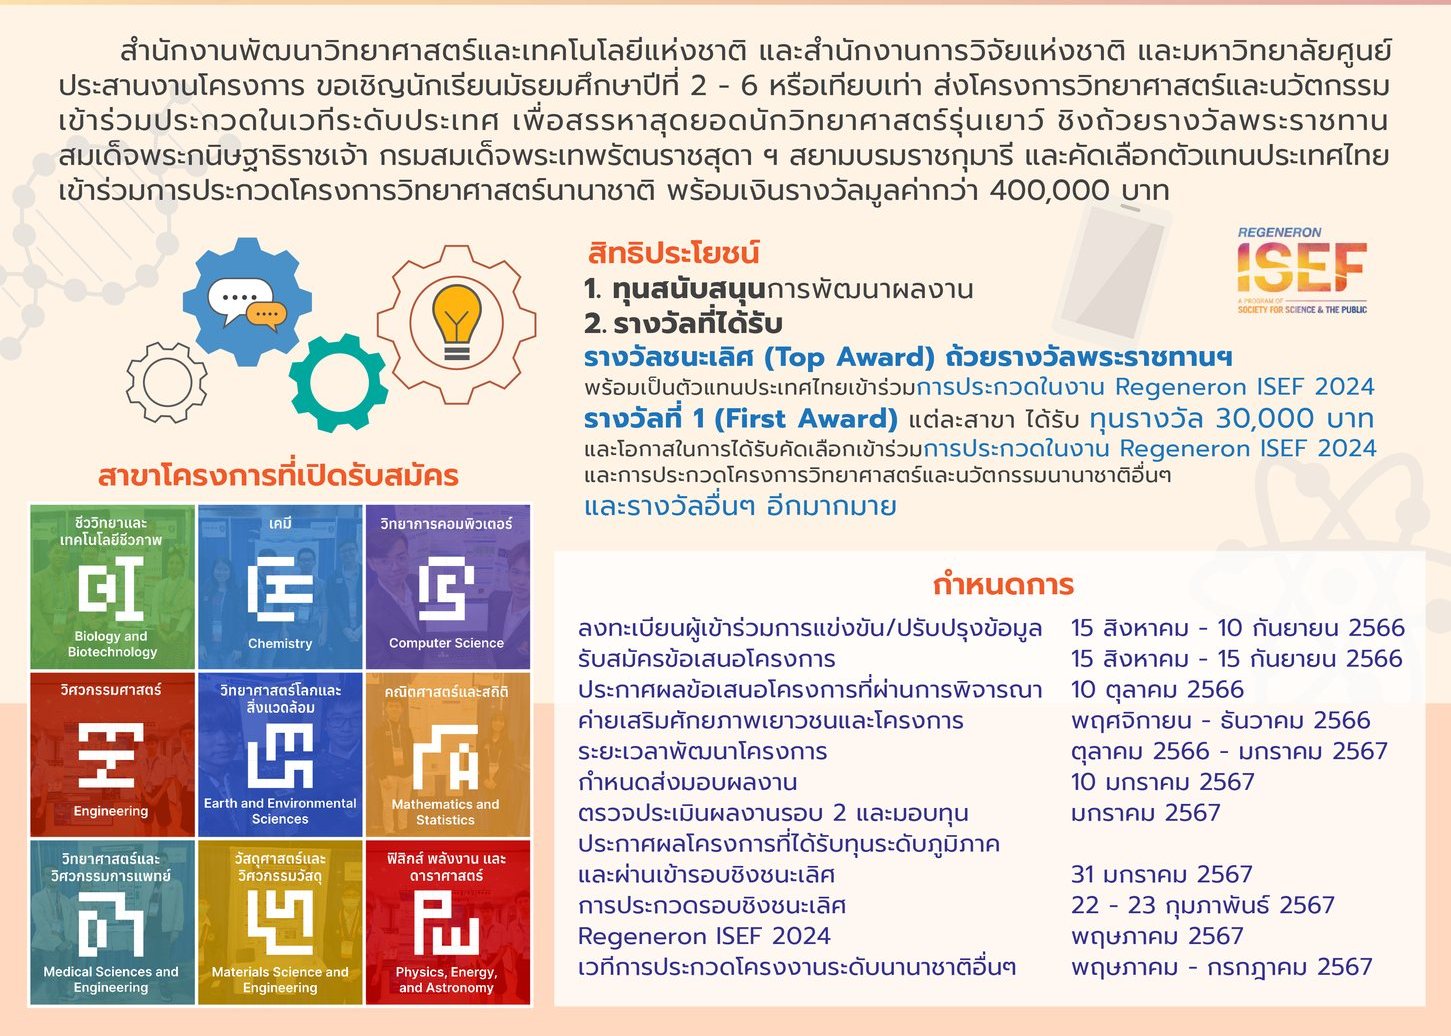 เปิดรับสมัครแล้ว สำหรับนักวิทยาศาสตร์รุ่นเยาว์ภาคใต้ โครงการ YSC 2024 ชิงถ้วยรางวัลพระราชทานสมเด็จพระกนิษฐาธิราชเจ้า กรมสมเด็จพระเทพรัตนราชสุดาฯ และคัดเลือกตัวแทนประเทศไทยเข้าร่วมการประกวดโครงงานวิทยาศาสตร์นานาชาติ